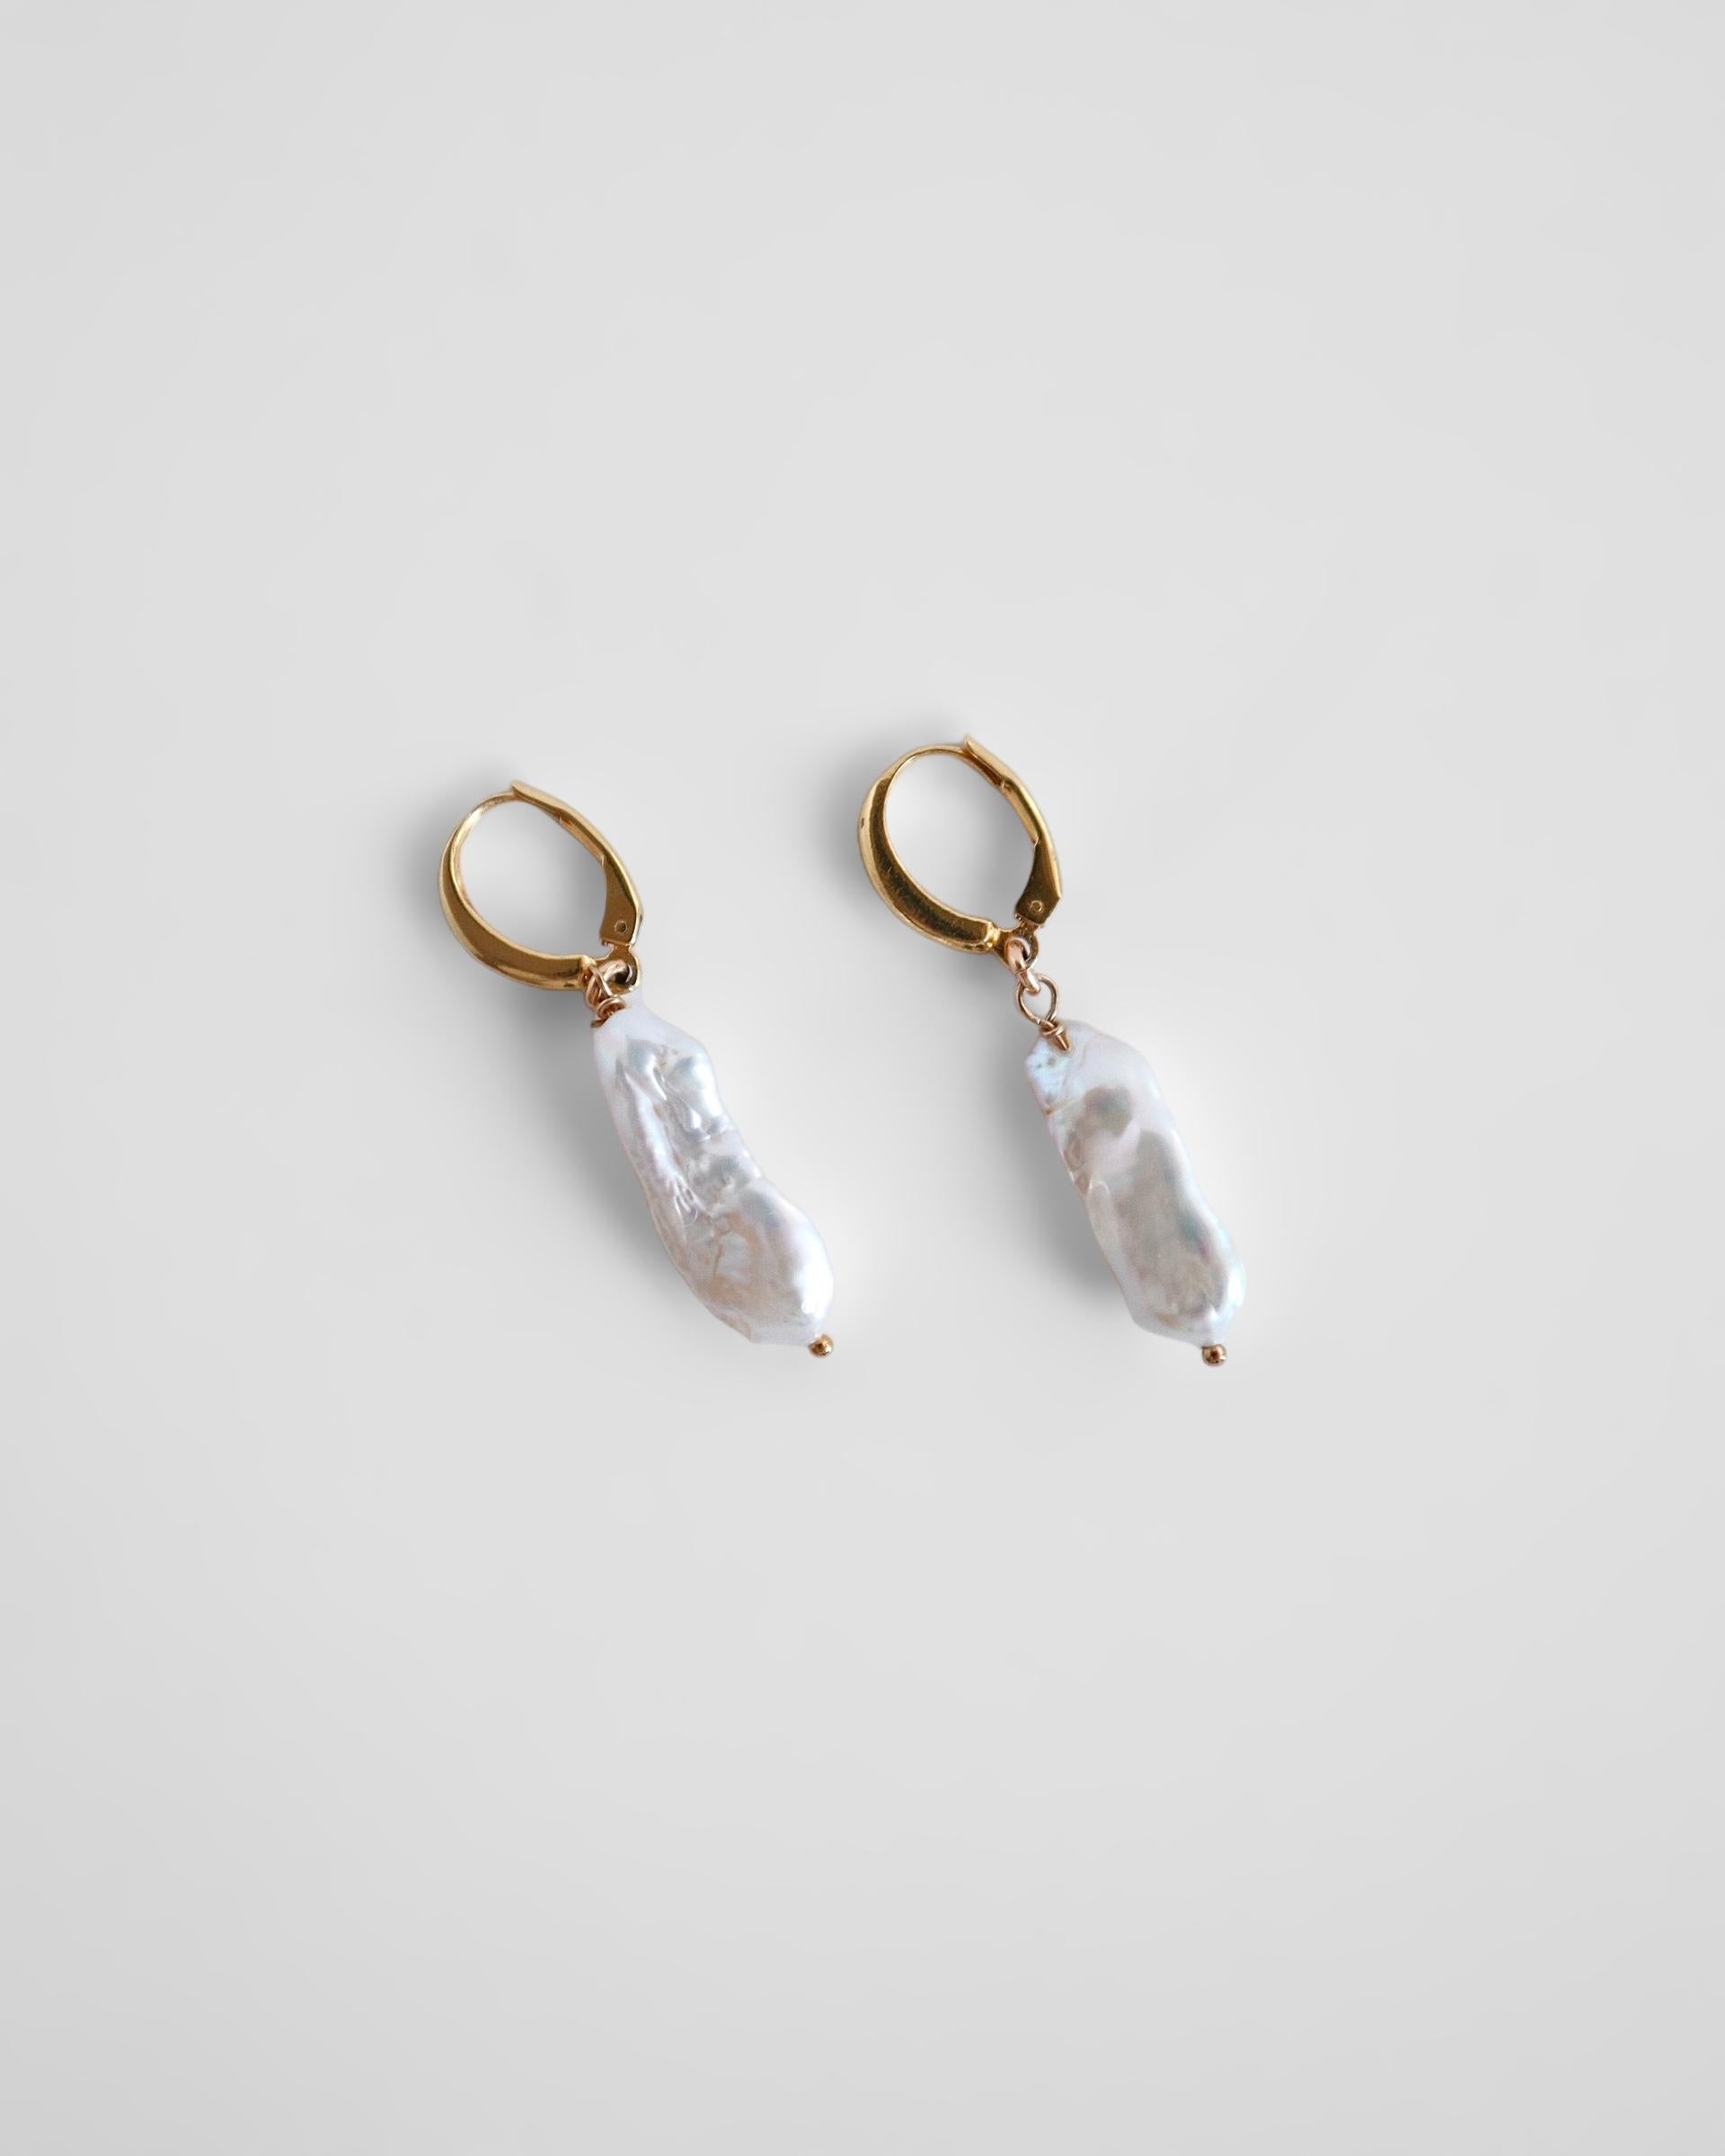 Erhöhen Sie Ihren Look mit unserer modernen Interpretation von Perlen. Die Gaia-Ohrringe strahlen eine subtile Eleganz aus.

Versand innerhalb von 2 Wochen 

4 Monate Garantie

Einzelheiten:
- ca. 40 mm lang
- 14K Gold gefüllt Hebel zurück Haken
-